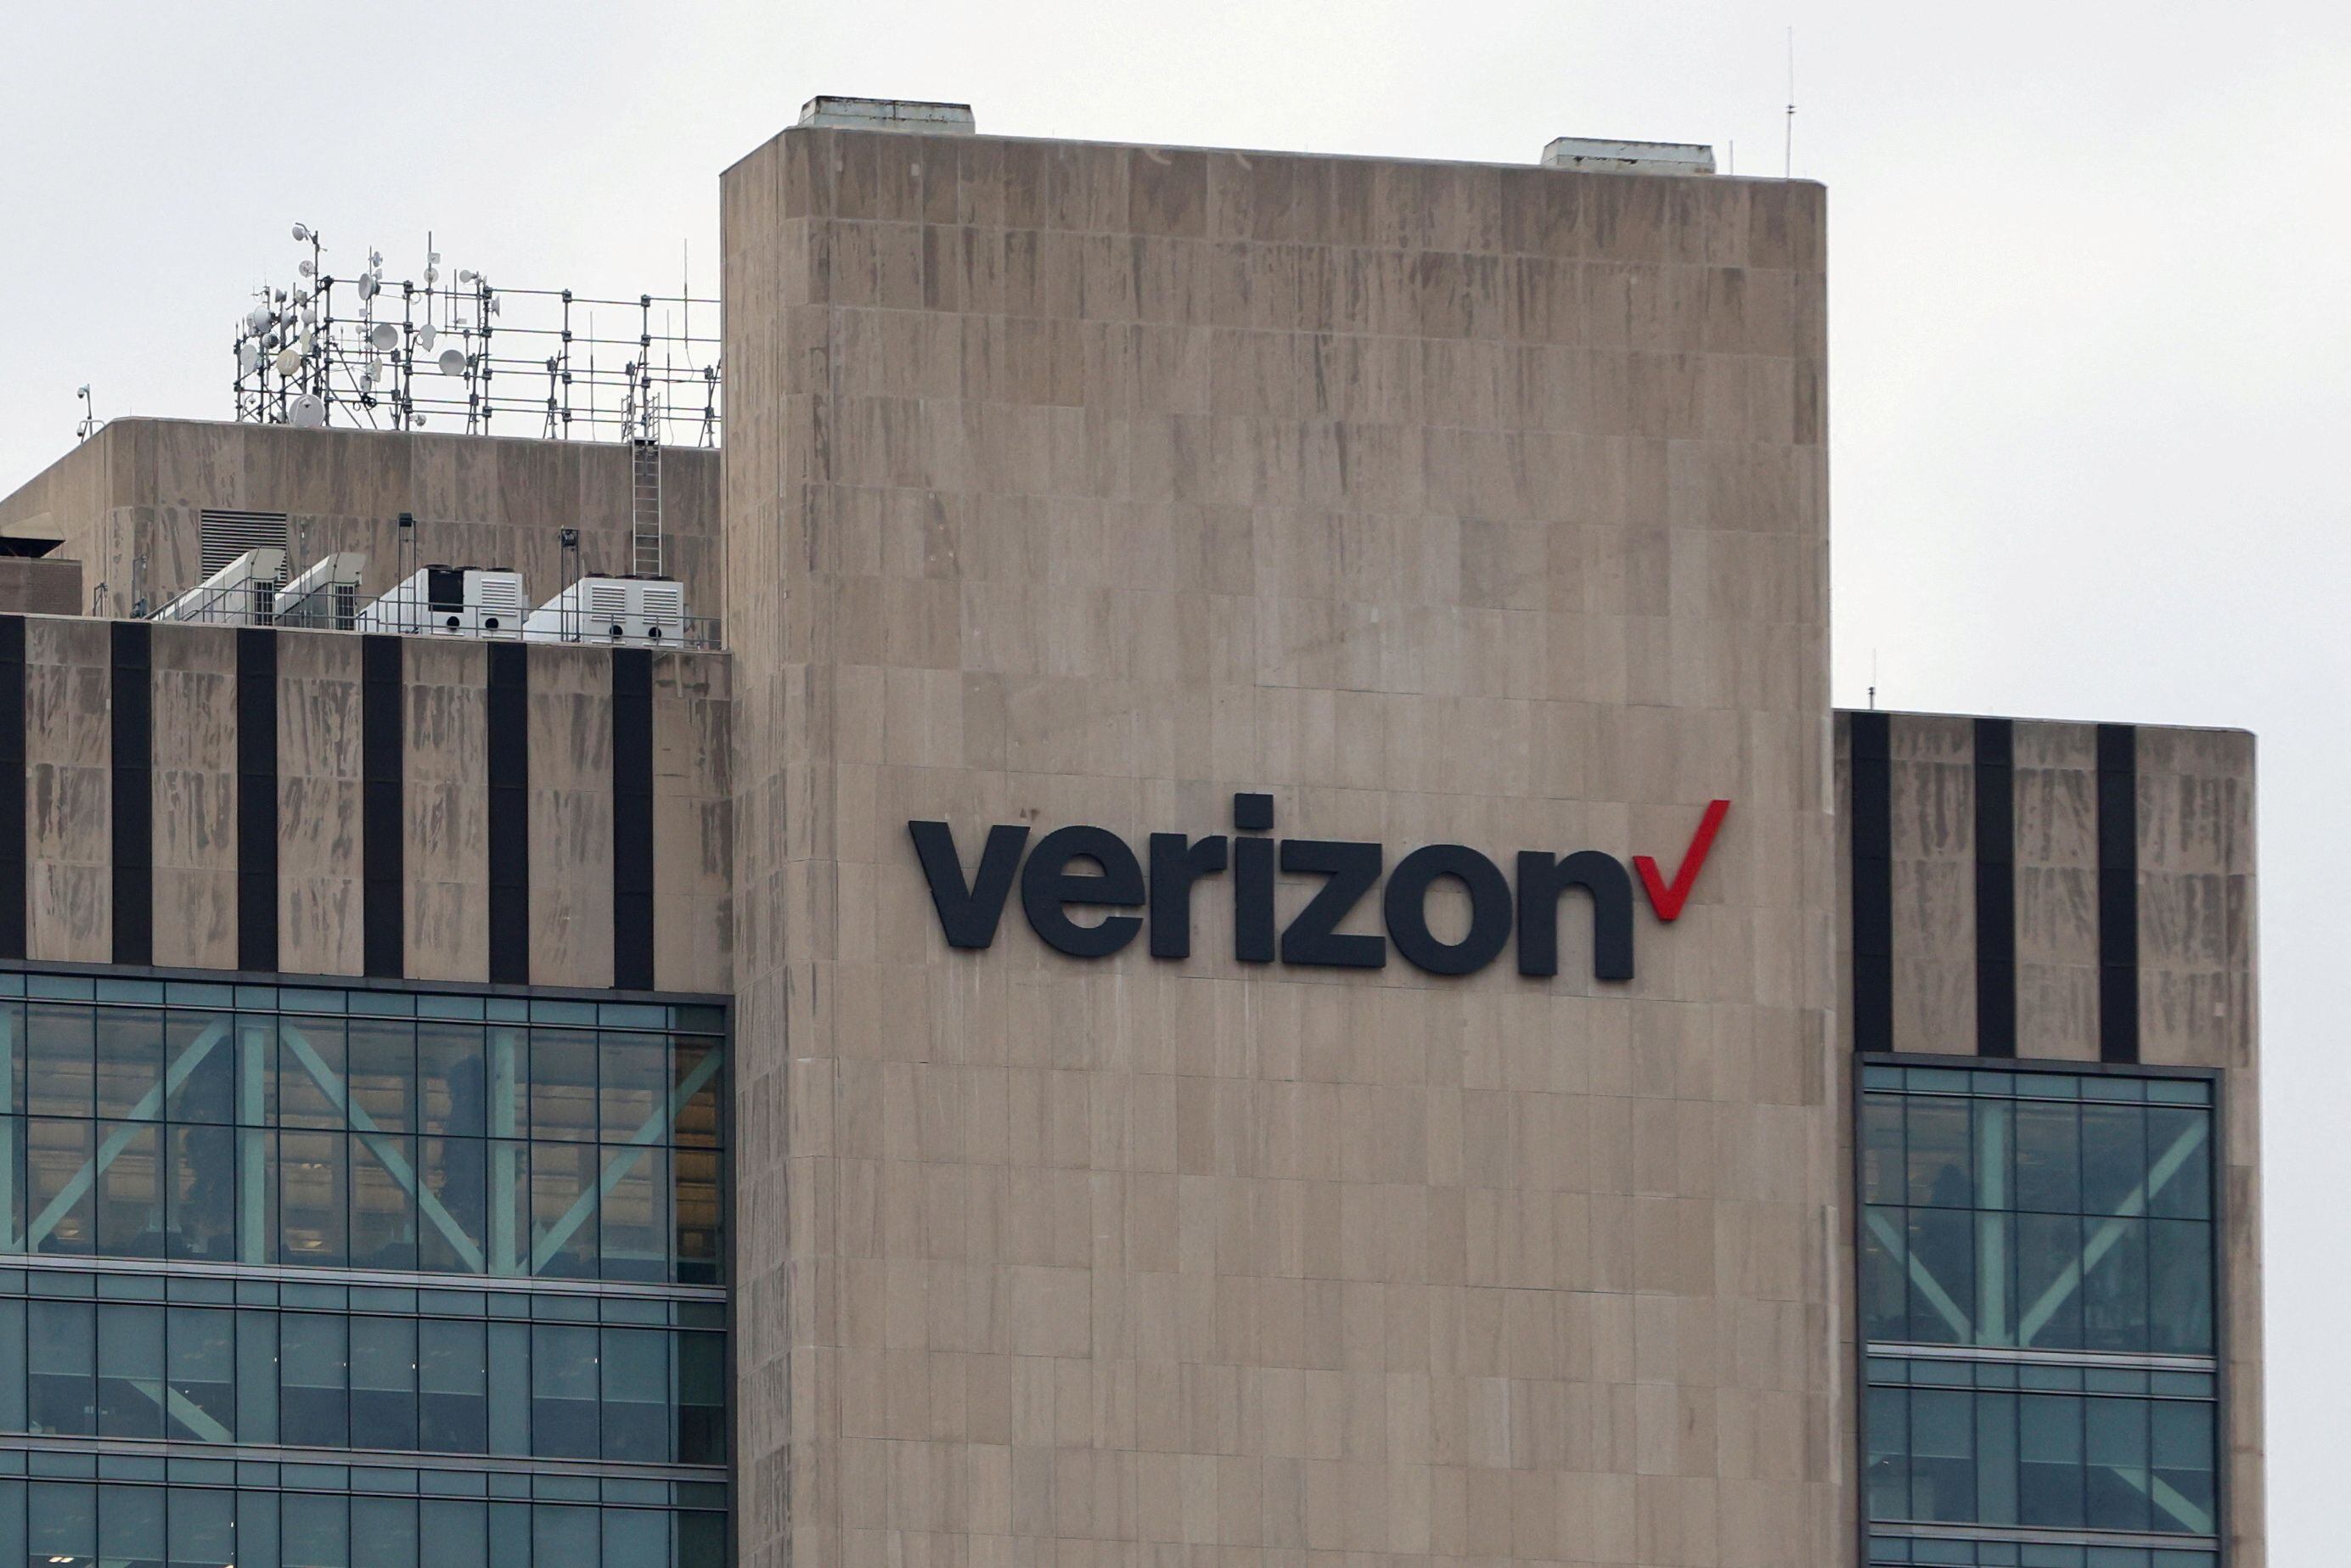 Proveedores de servicios de internet como Verizon y AT&T;, anticipan desafíos legales tras nuevo marco regulador (REUTERS/Andrew Kelly)